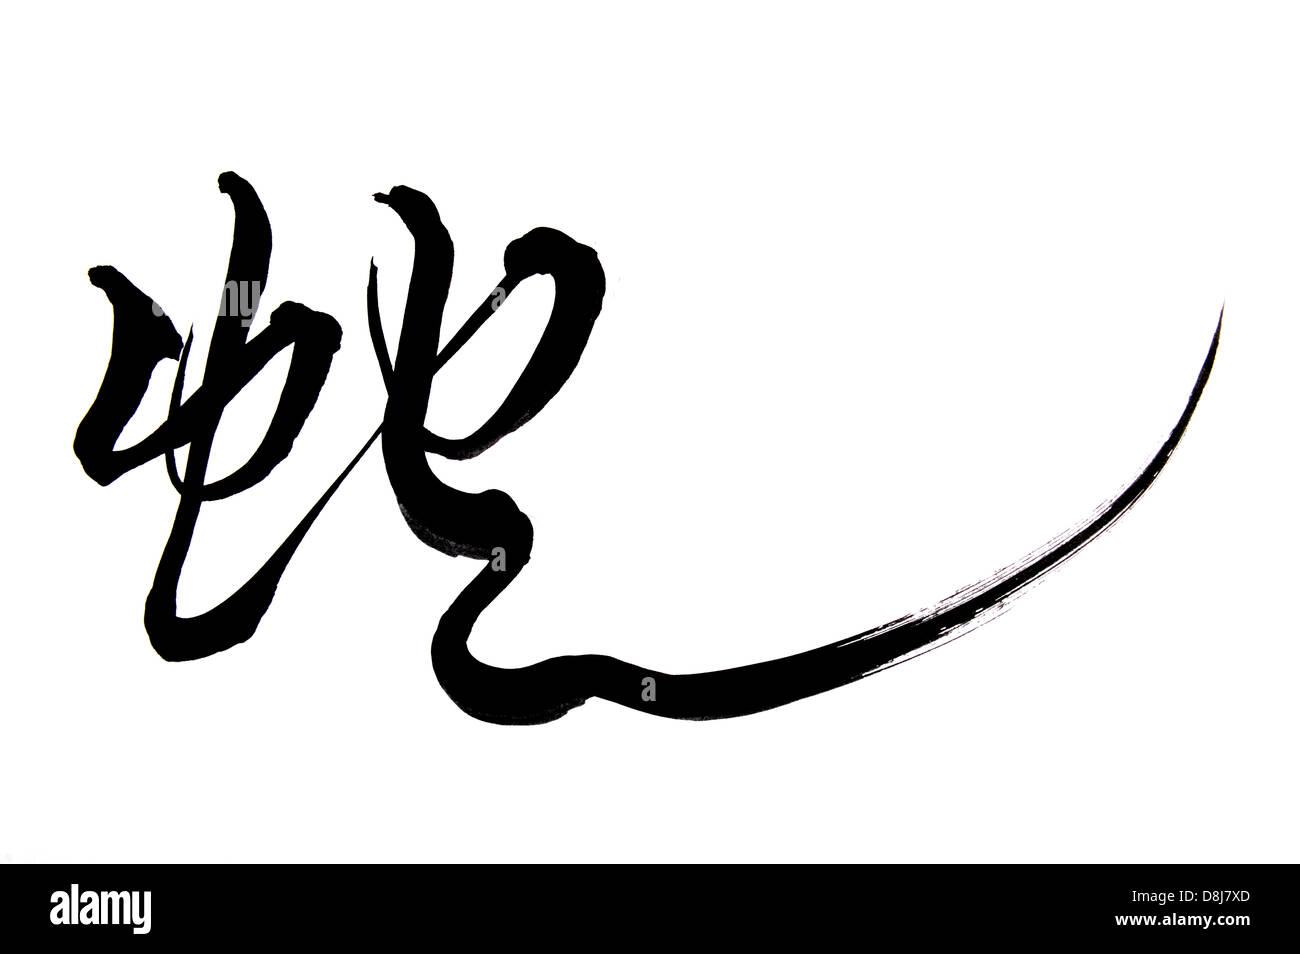 La calligrafia cinese 2013 Anno del serpente design Foto Stock